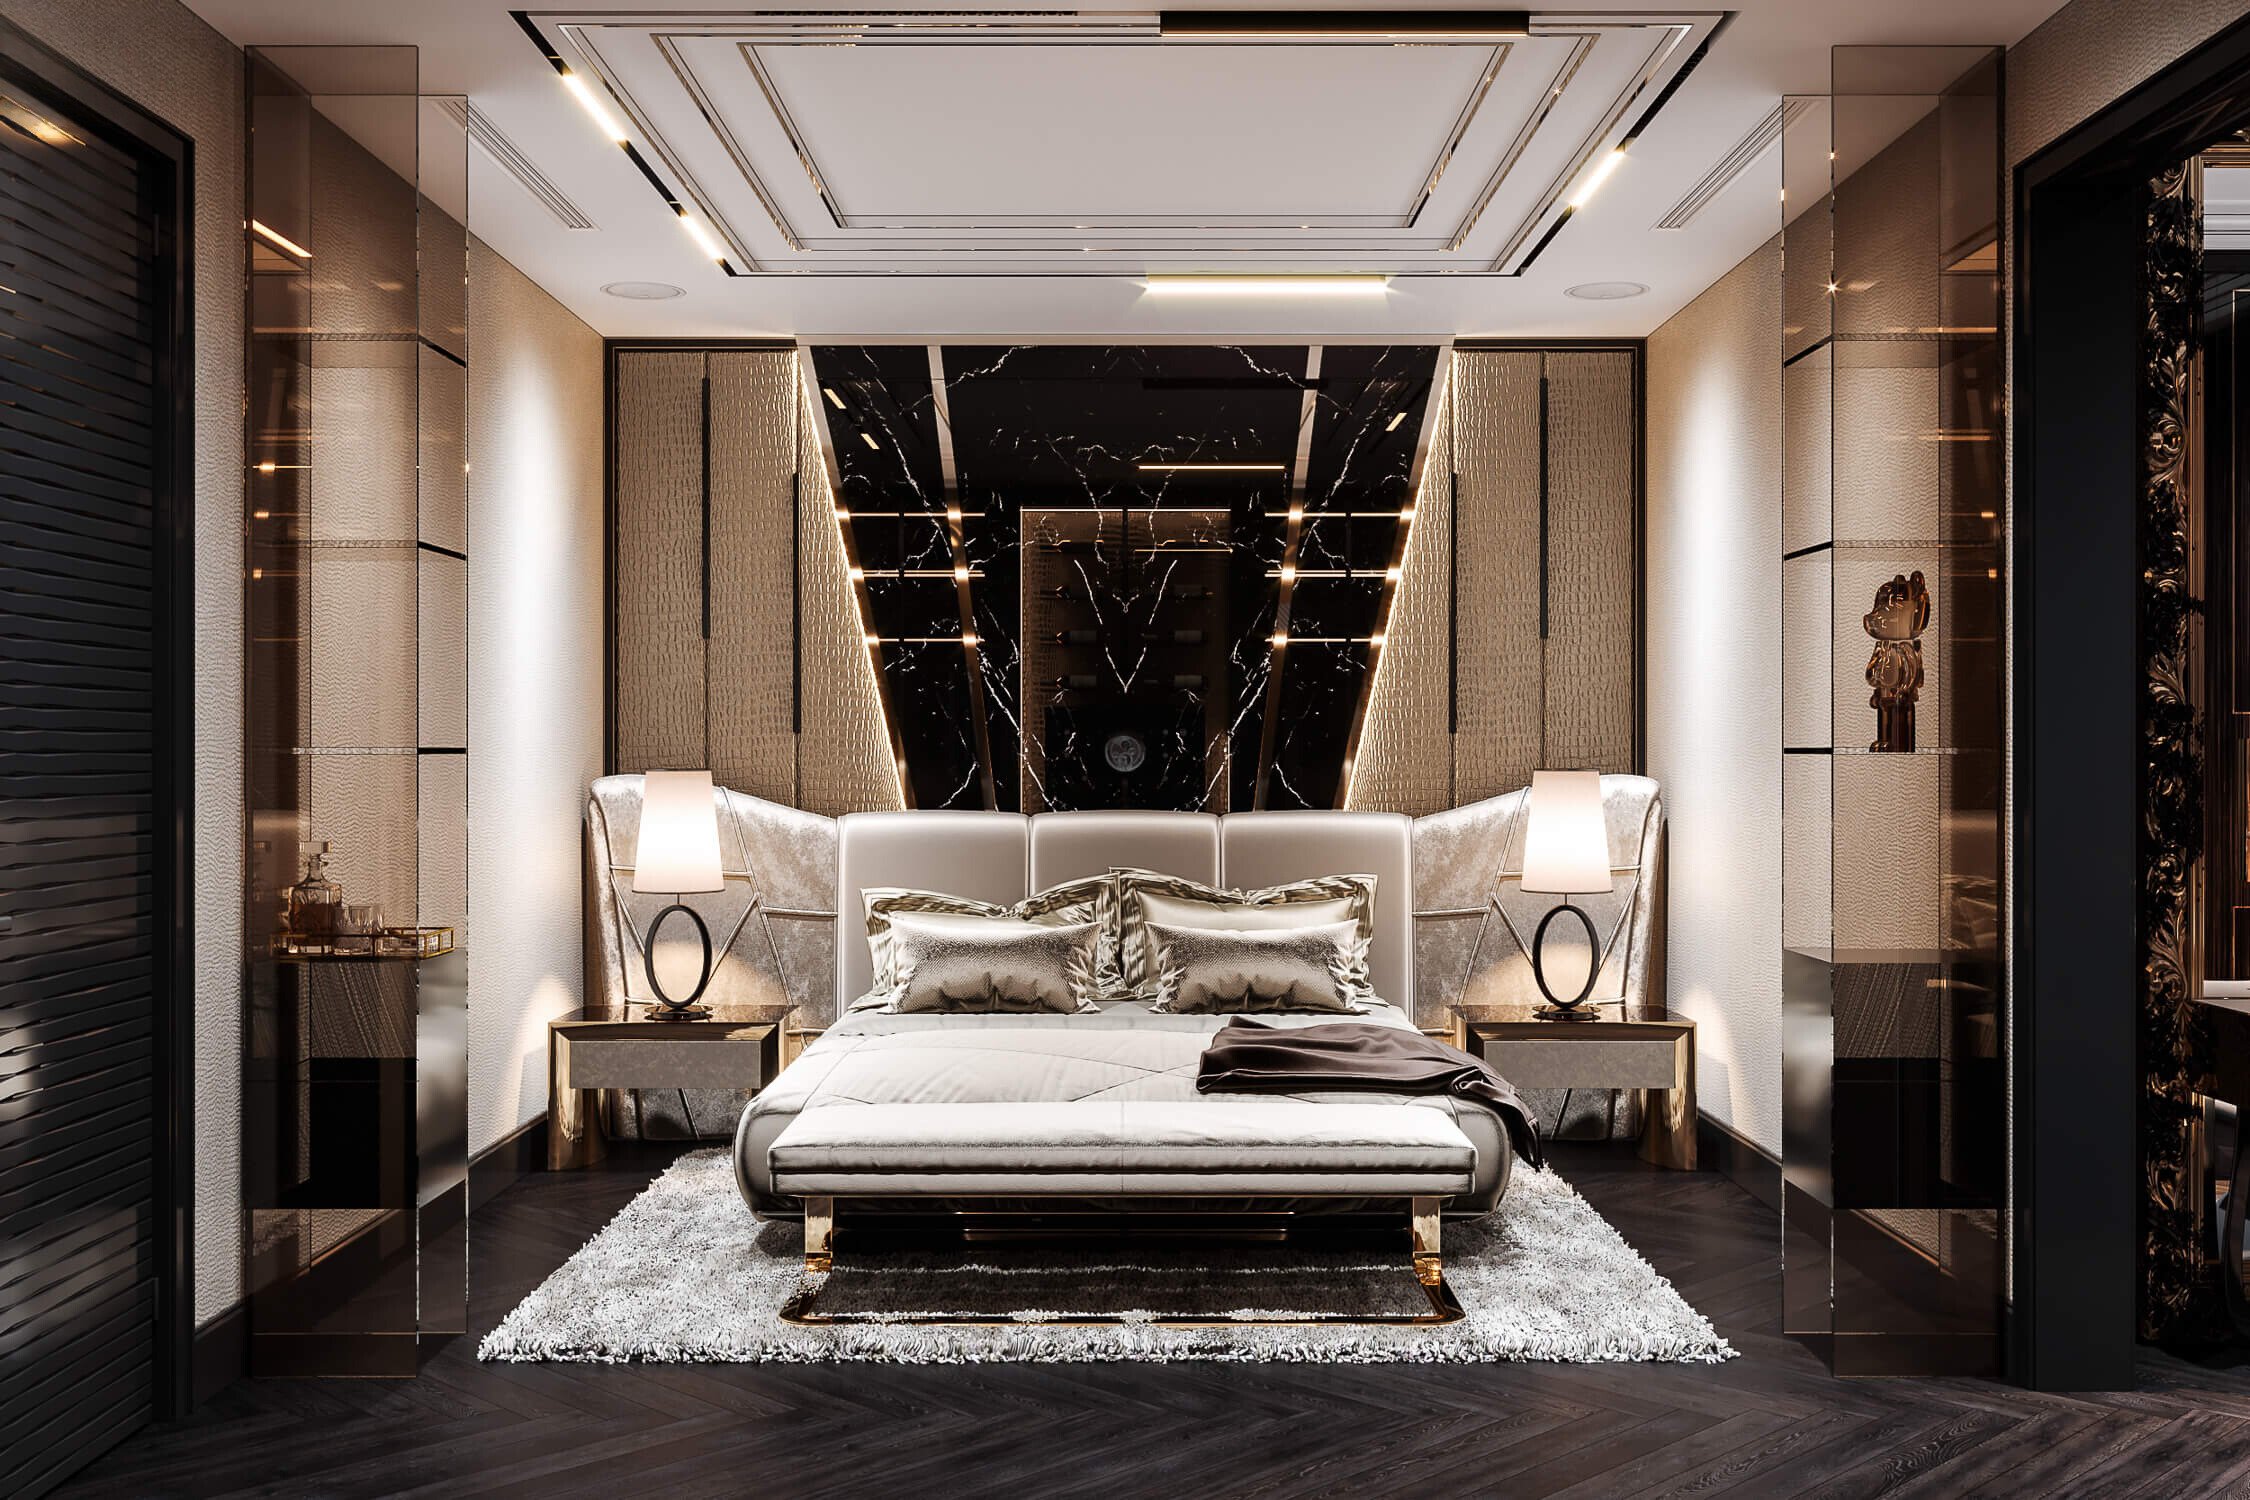 Phòng ngủ phong cách Modern Luxury nổi bật với chất liệu ánh kim hào nhoáng